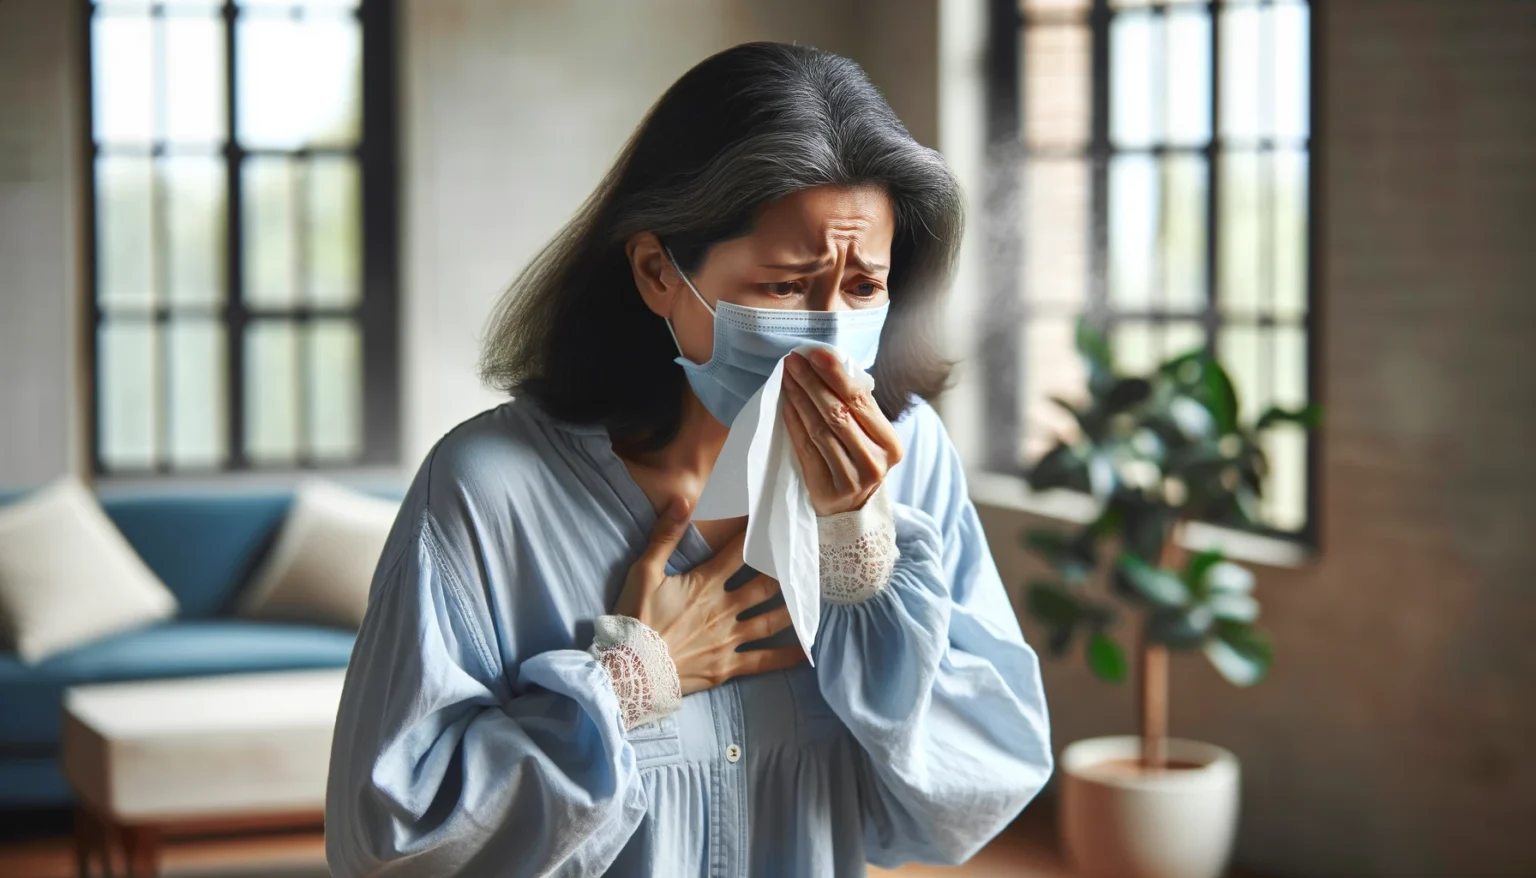 Ar condicionado piora a tosse